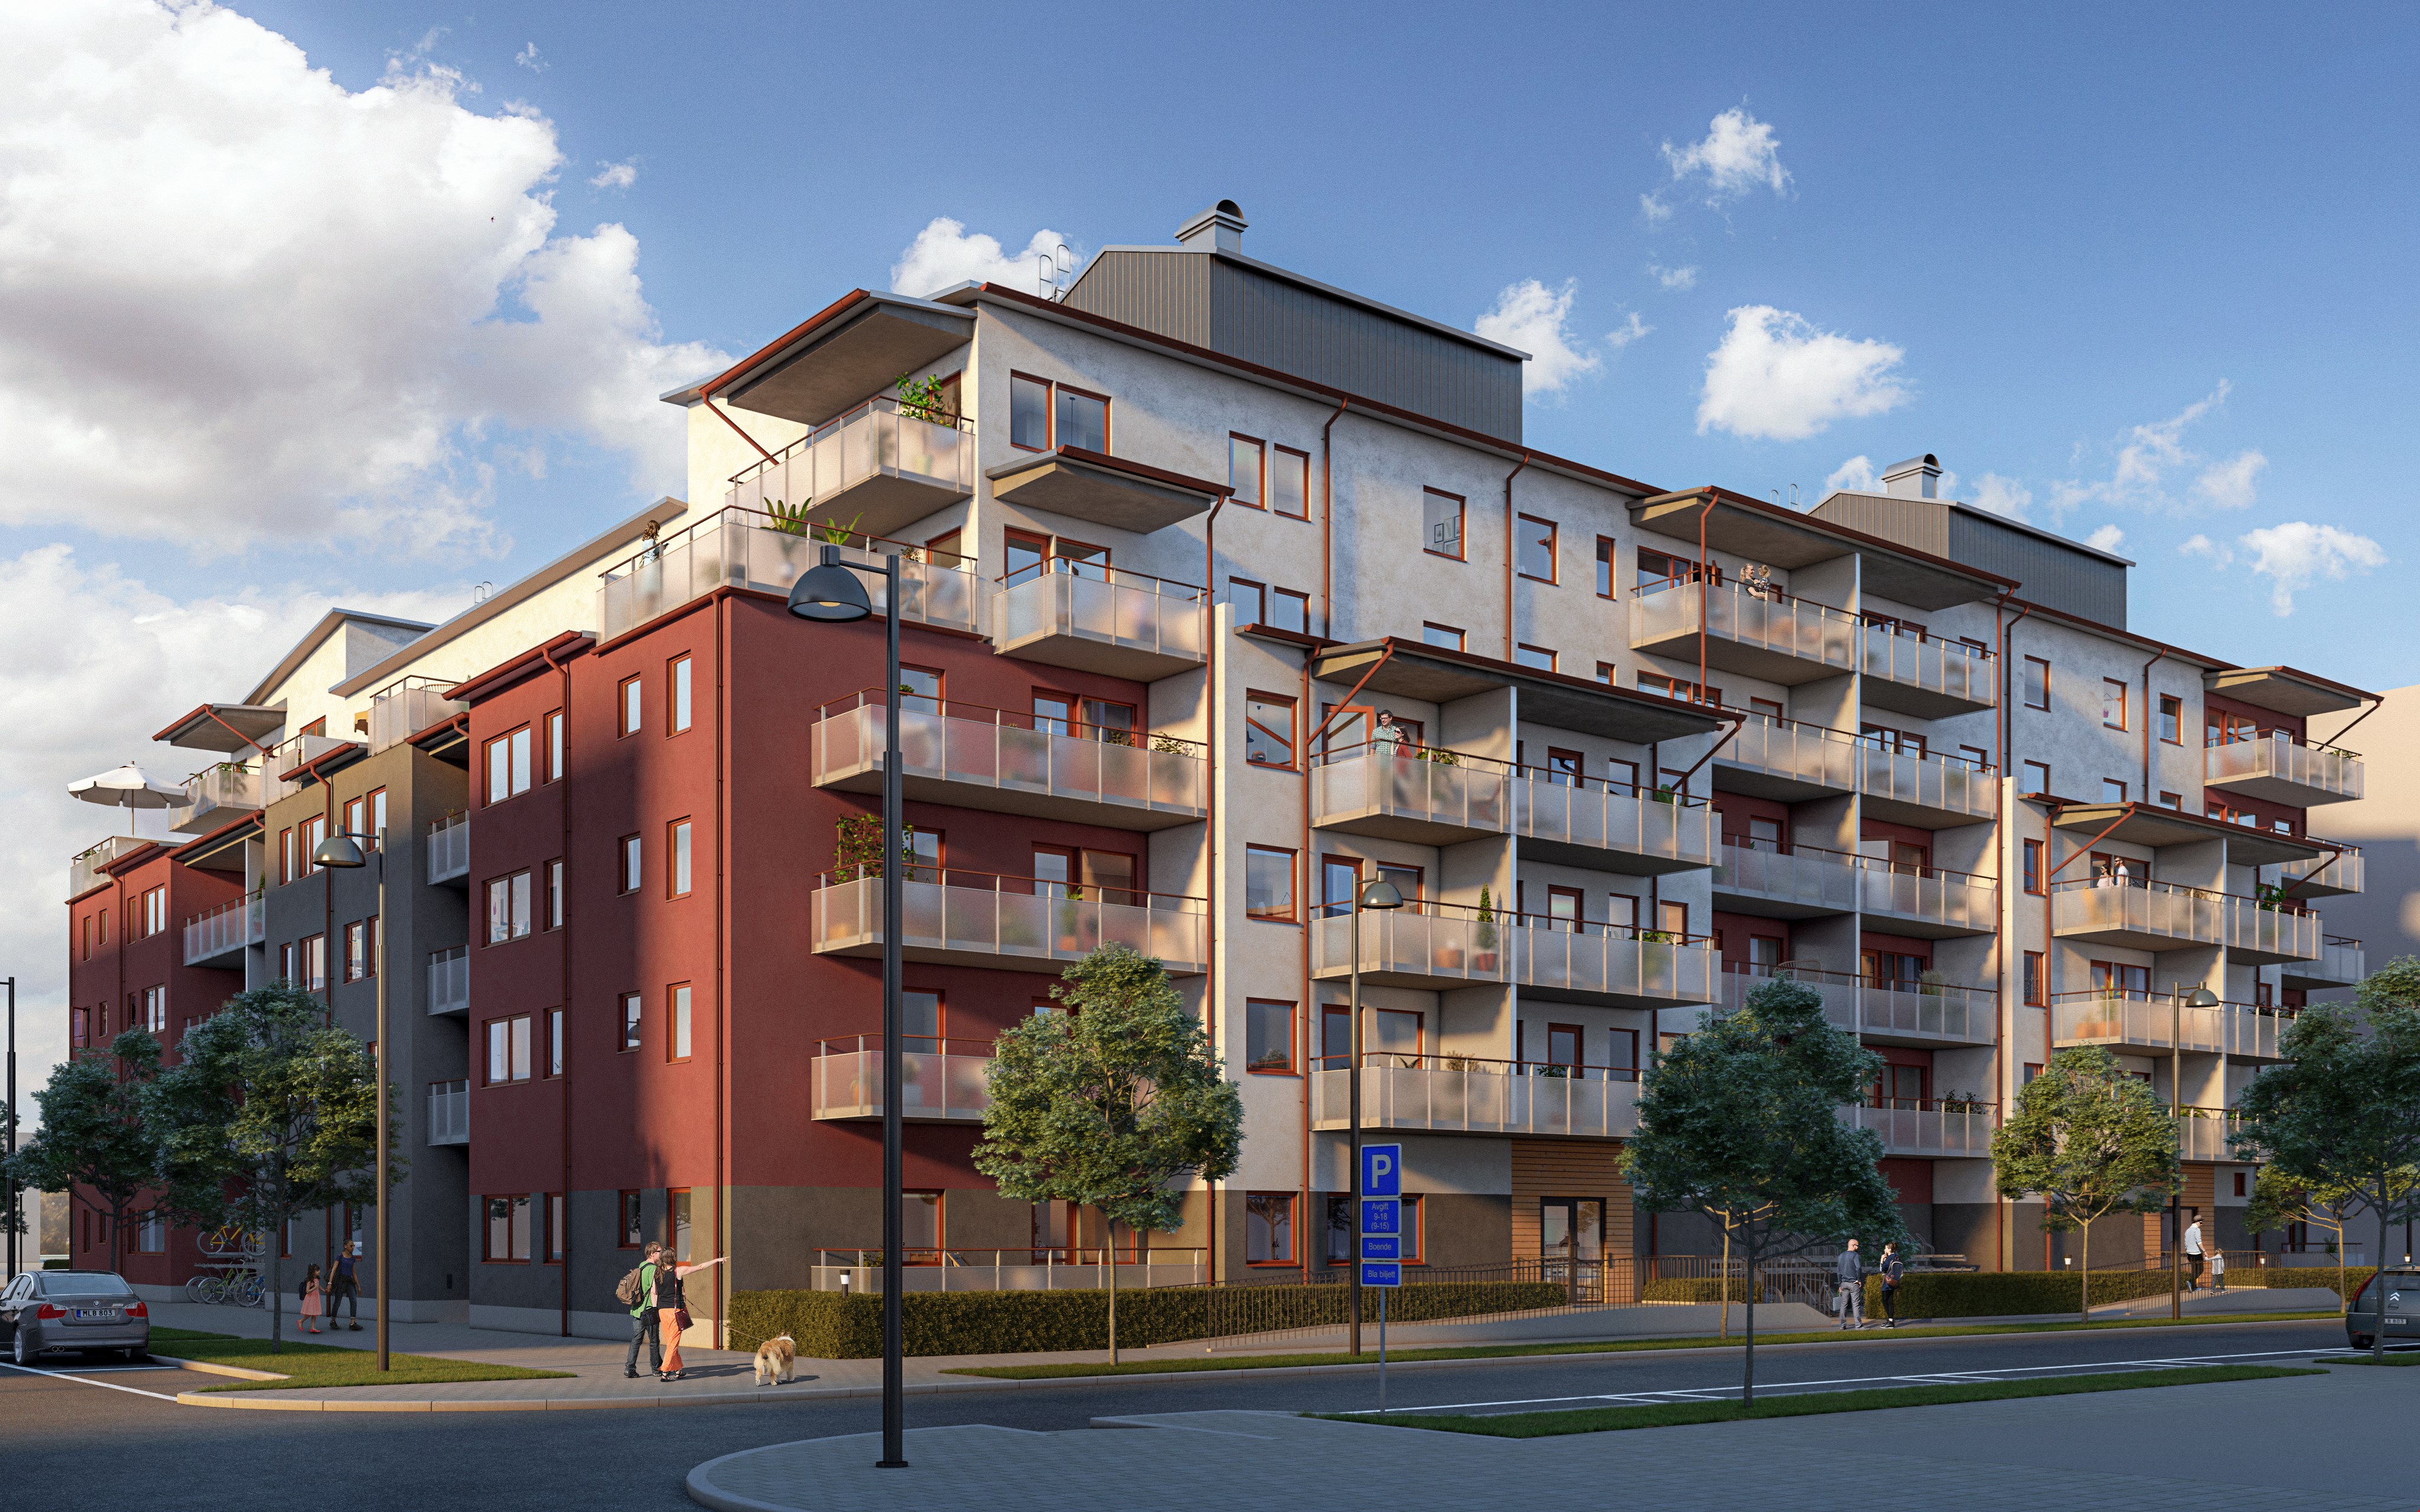 Sälj- och byggstart för 80 lägenheter i Riksbyggens Brf Sjömärket på Lillåudden